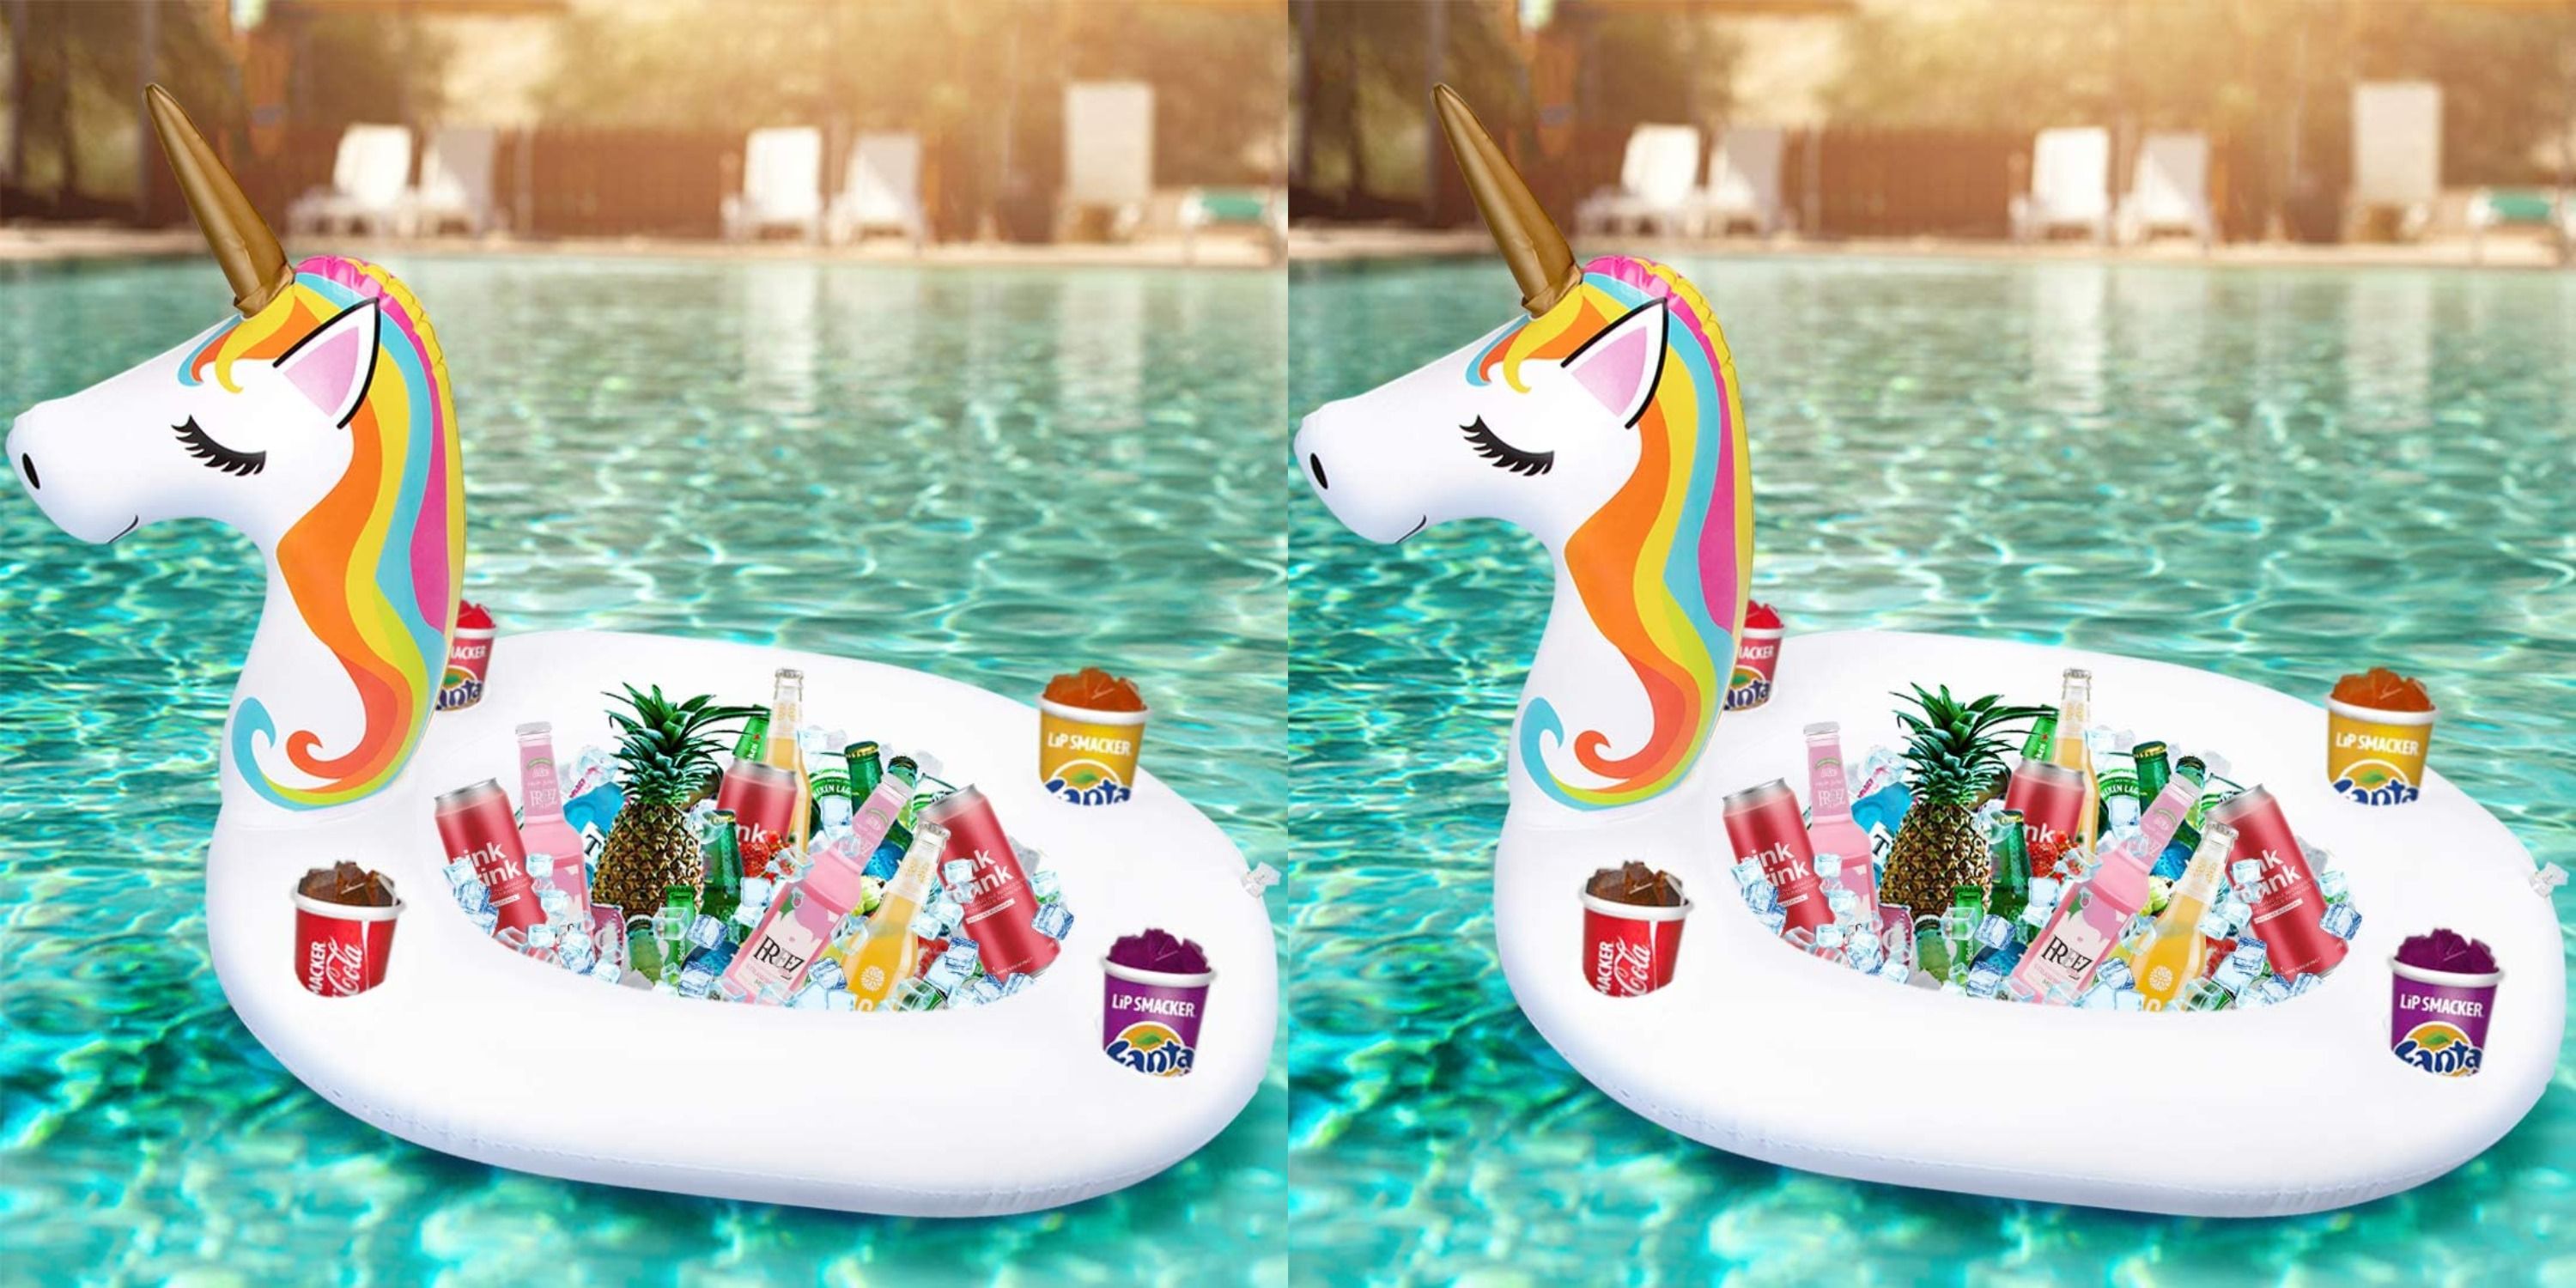 costco unicorn float